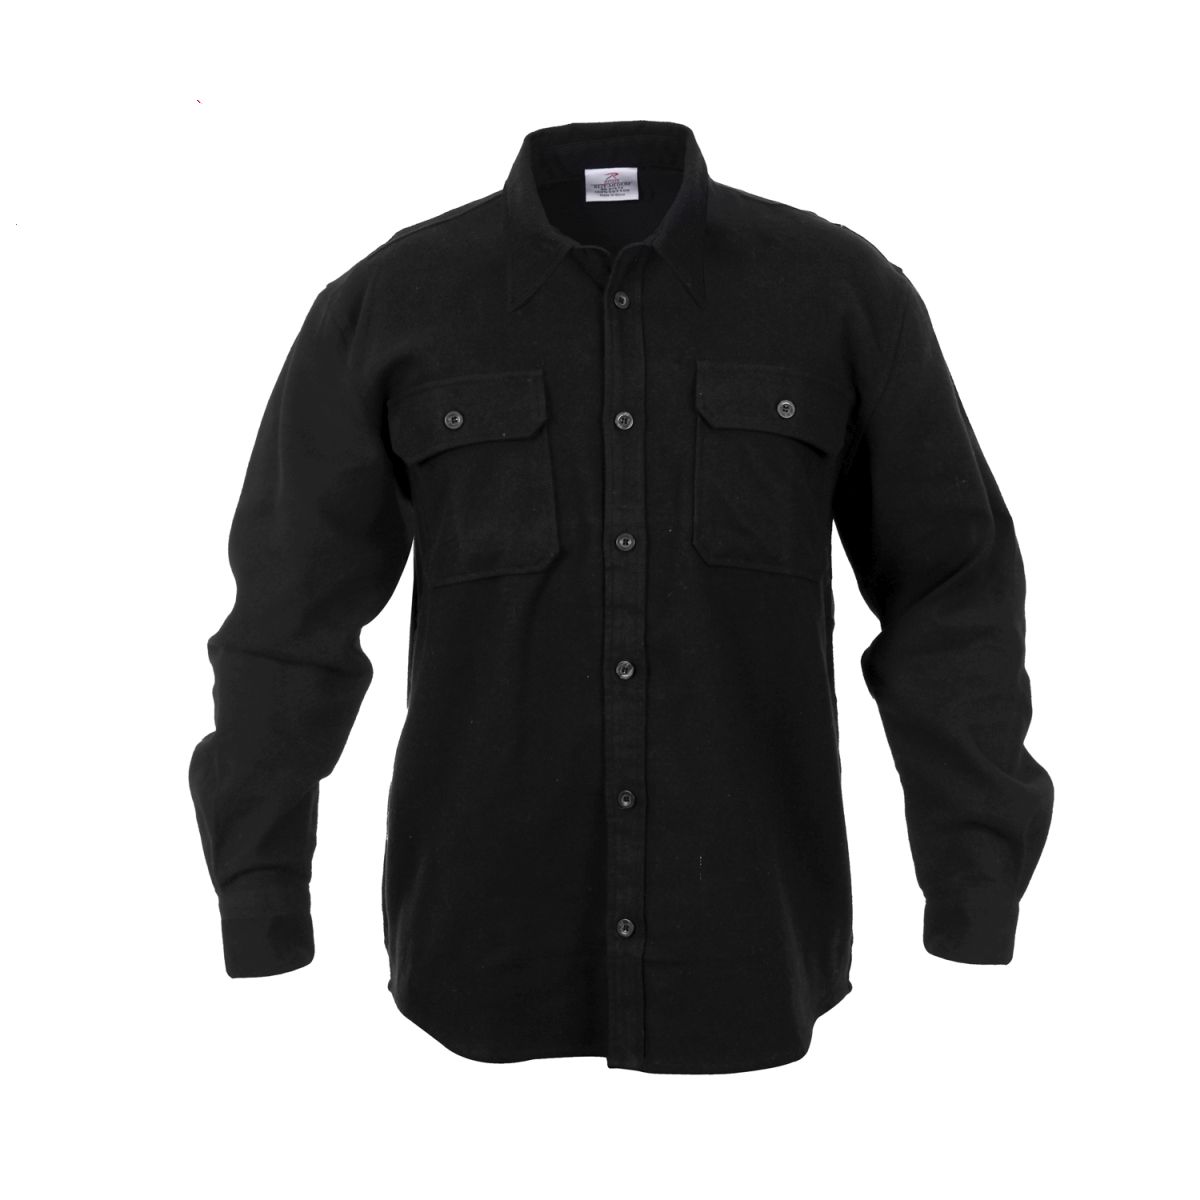 Lumberjack plaid shirt FLANNEL BLACK ROTHCO 4637 L-11